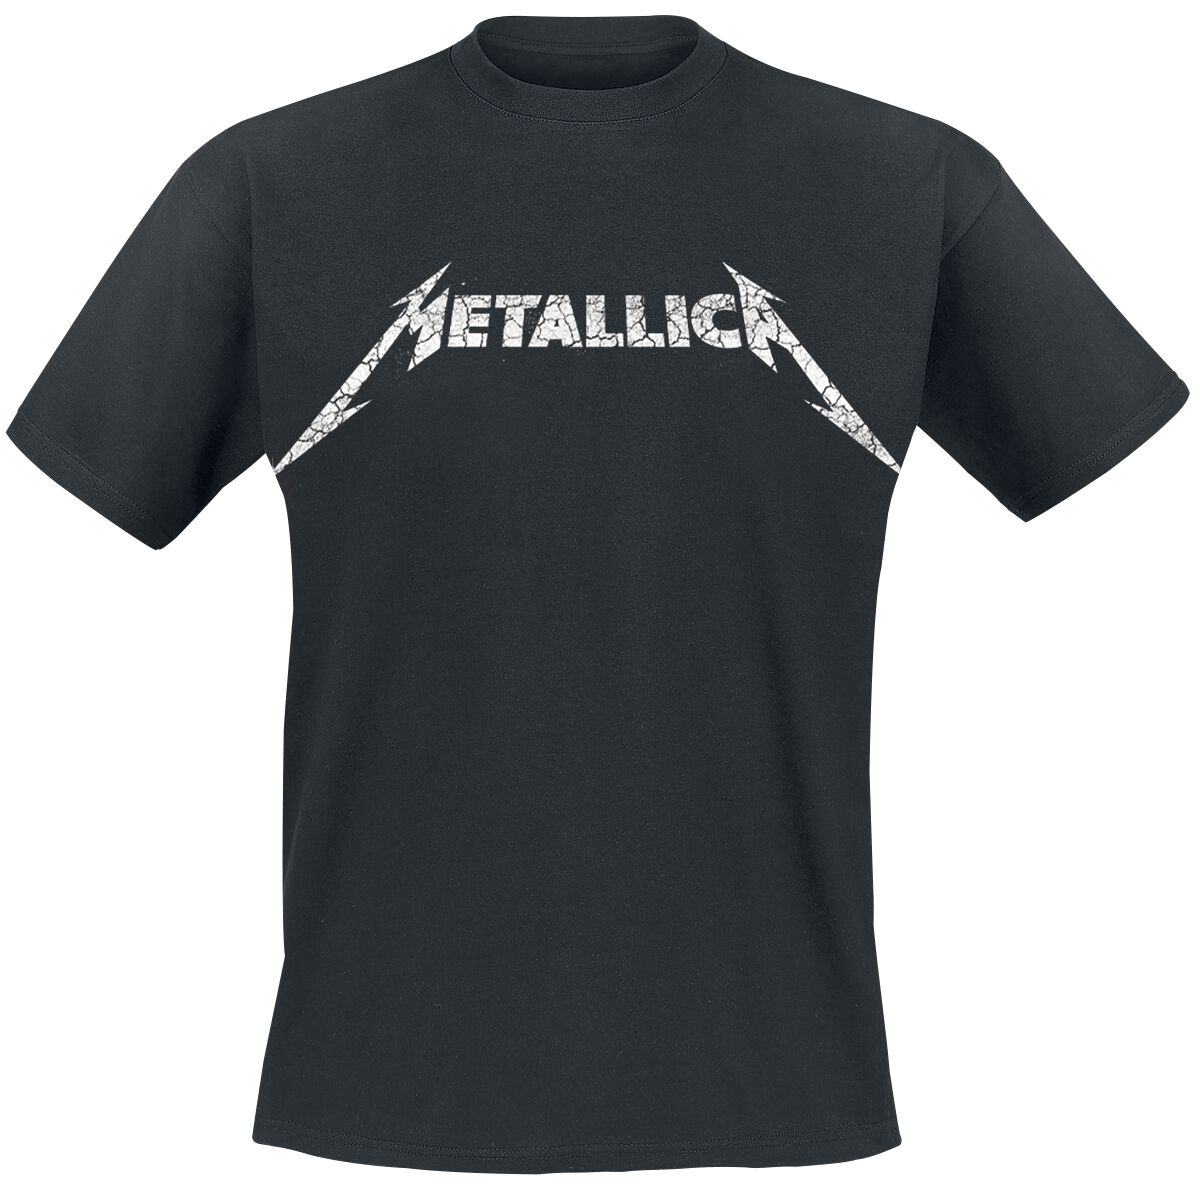 Metallica T-Shirt - Kill Ride Master - S bis 5XL - für Männer - Größe 4XL - schwarz  - Lizenziertes Merchandise!